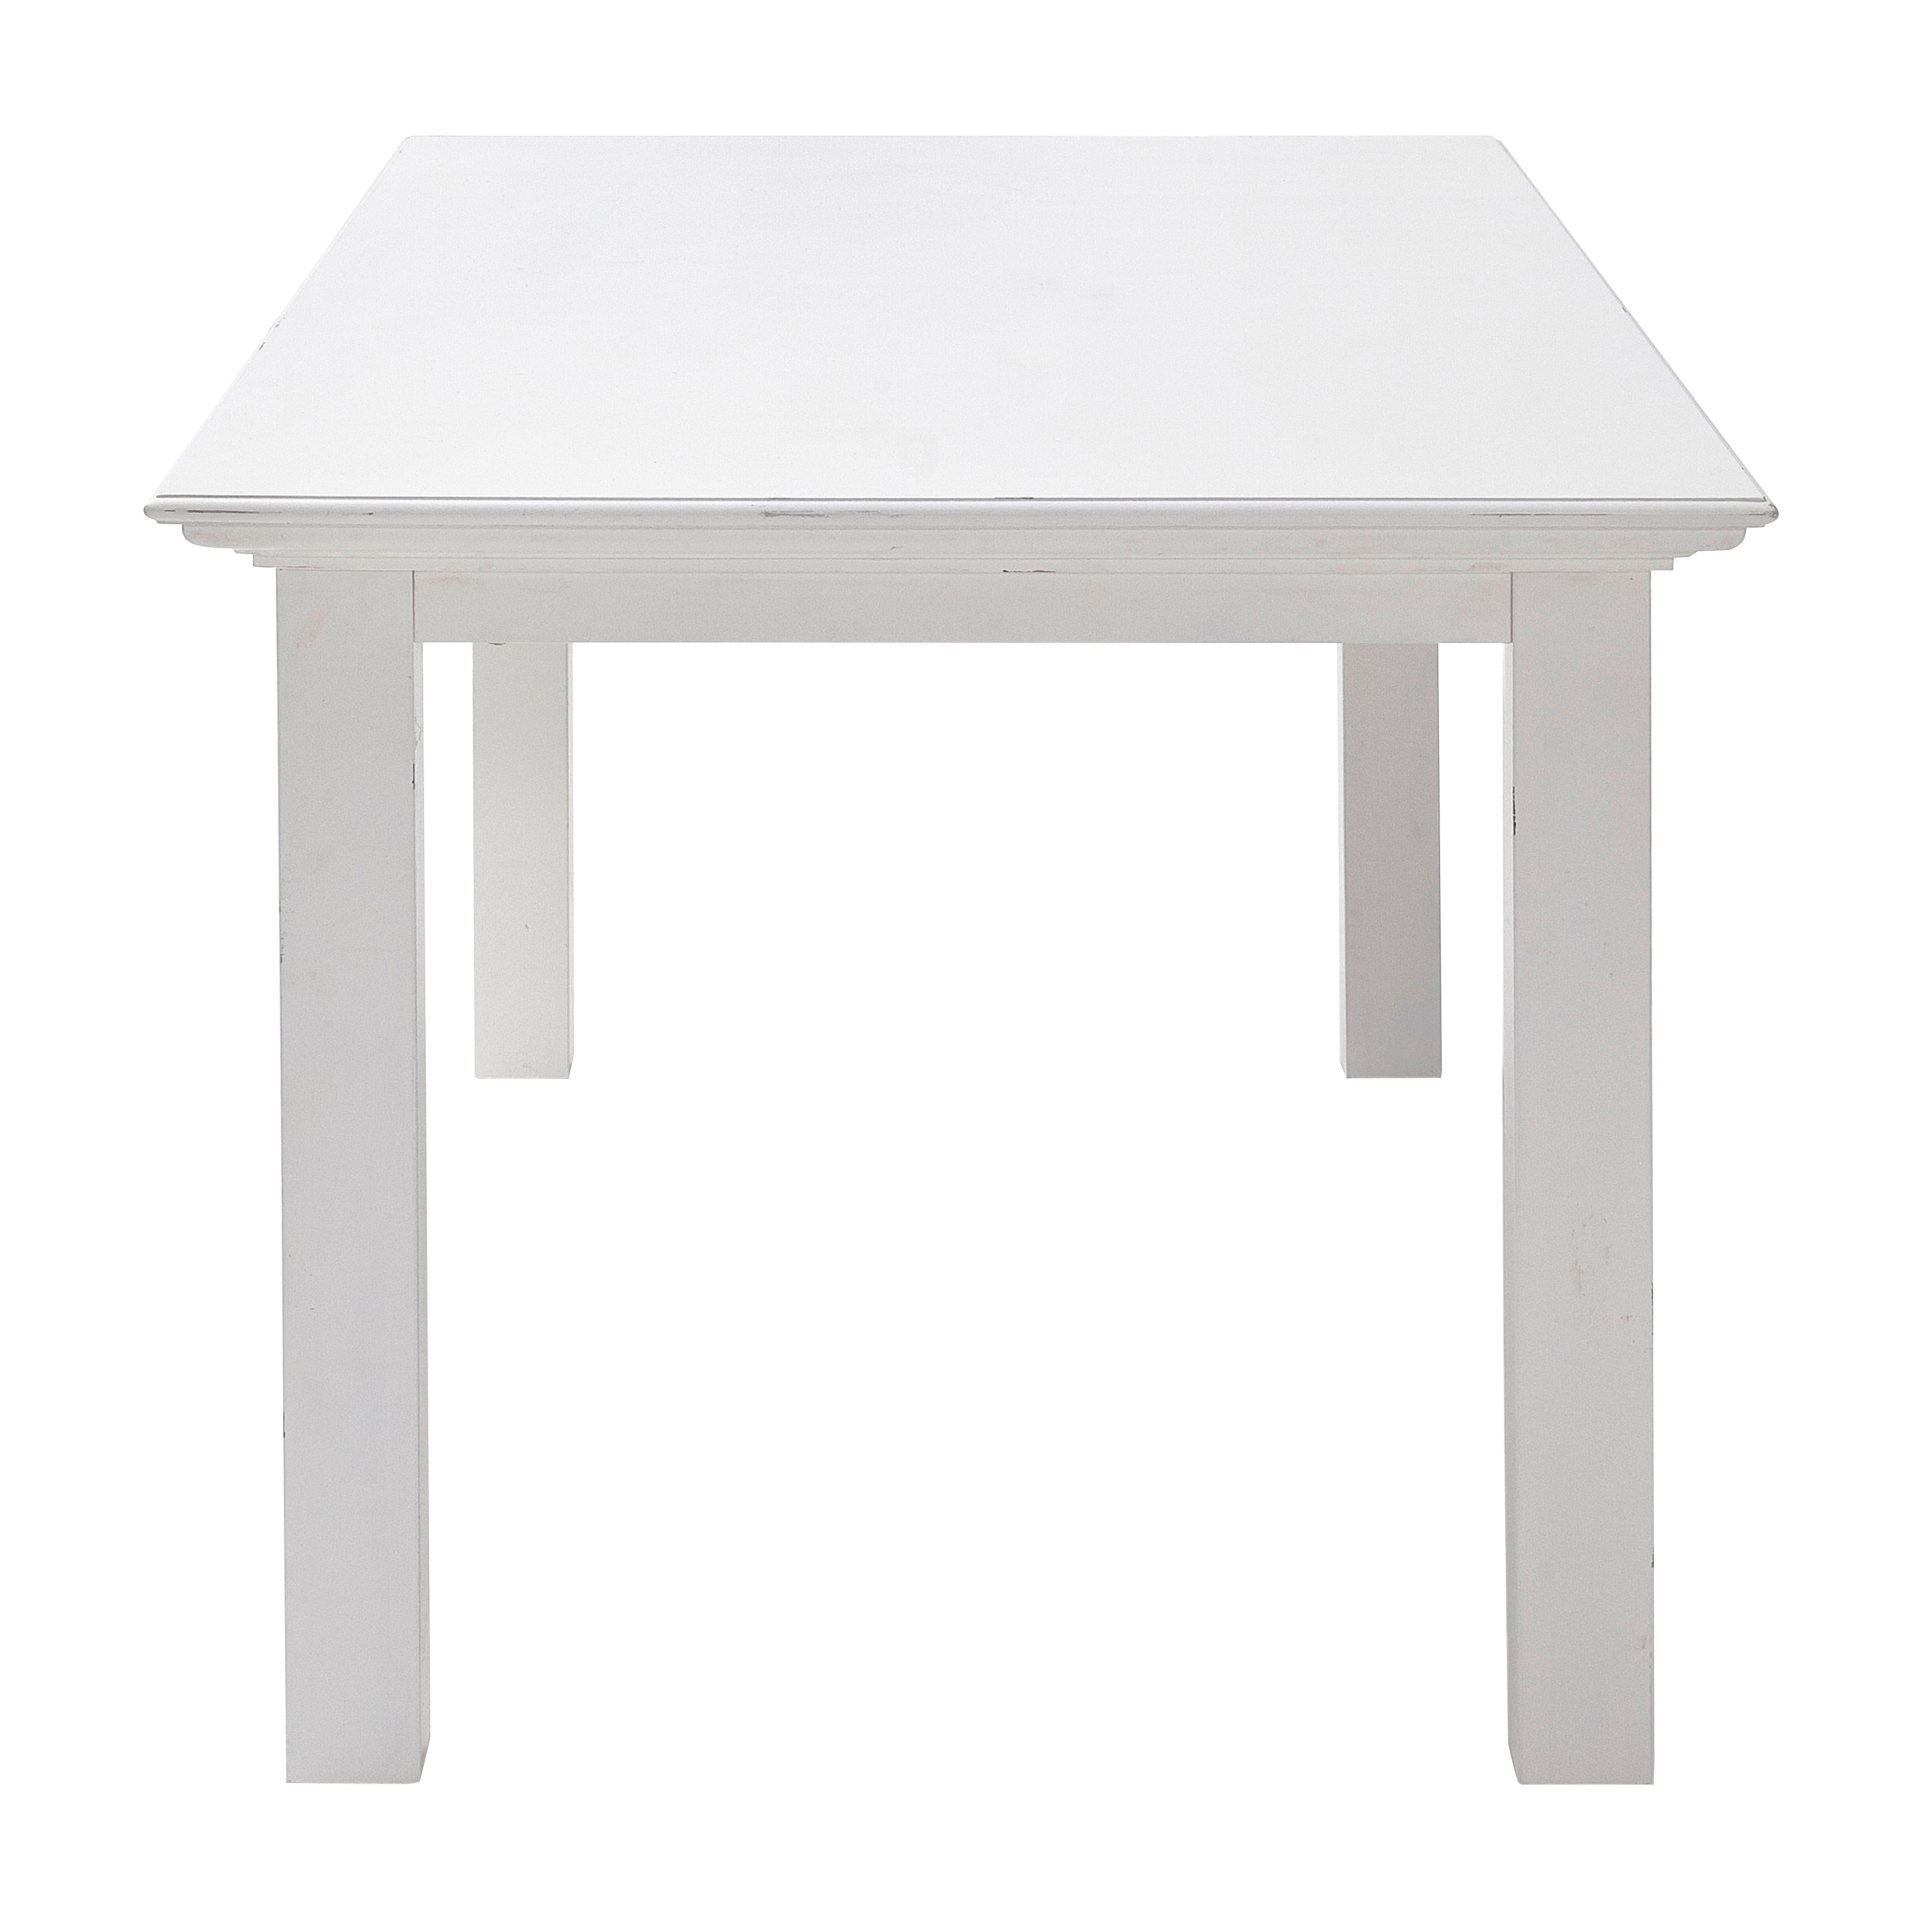 Der Esstisch Halifax überzeugt mit seinem Landhaus Stil. Gefertigt wurde er aus Mahagoni Holz, welches einen weißen Farbton besitzt. Der Tisch besitzt eine Breite von 180 cm.